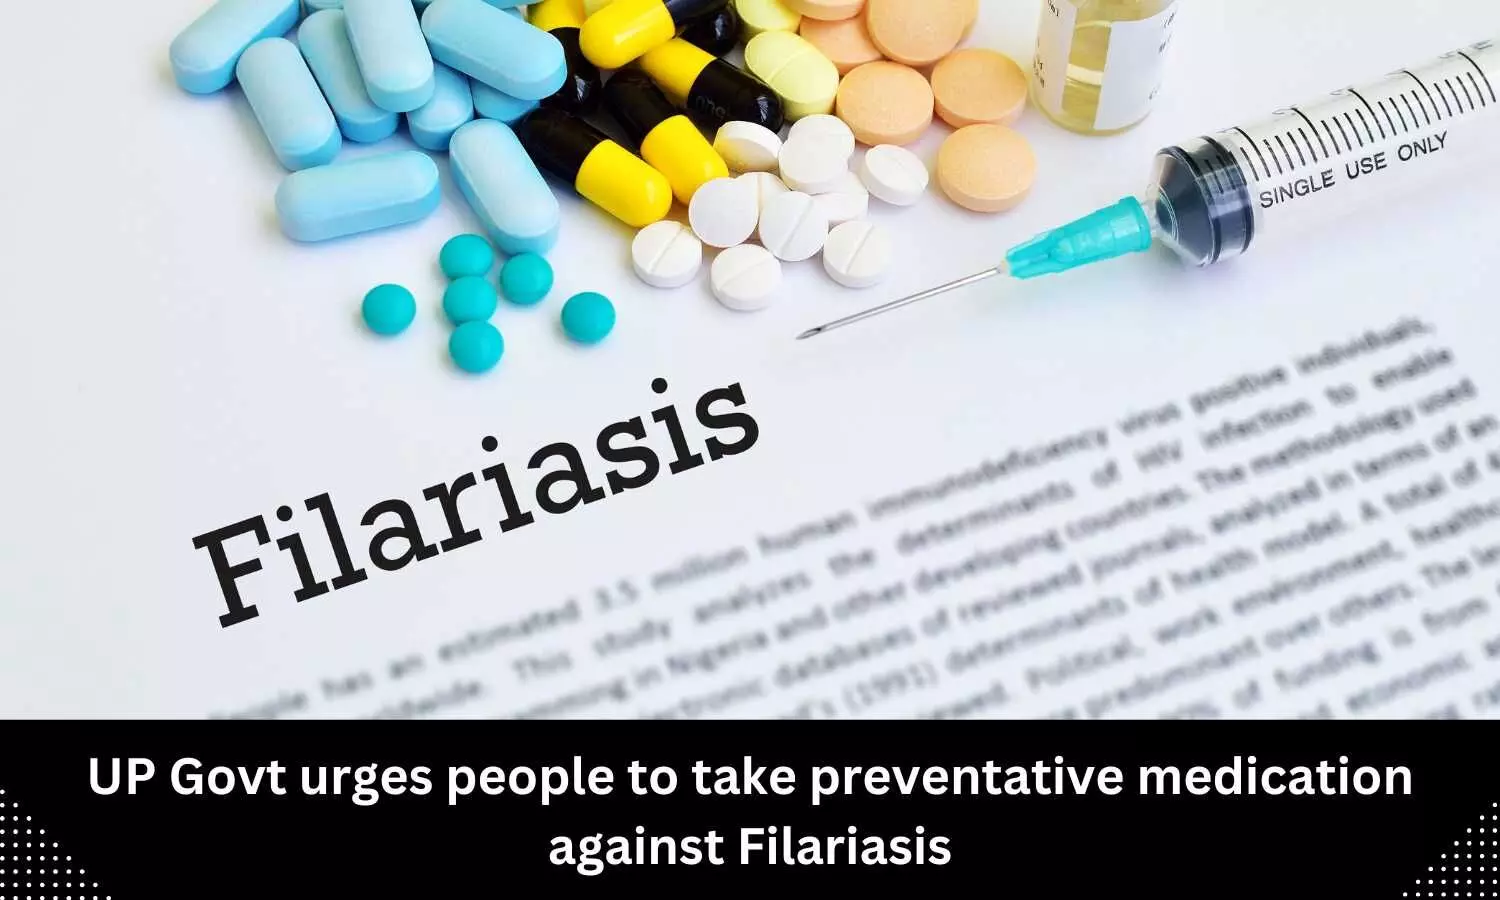 Take preventative medication against Filariasis: UP Govt urges people